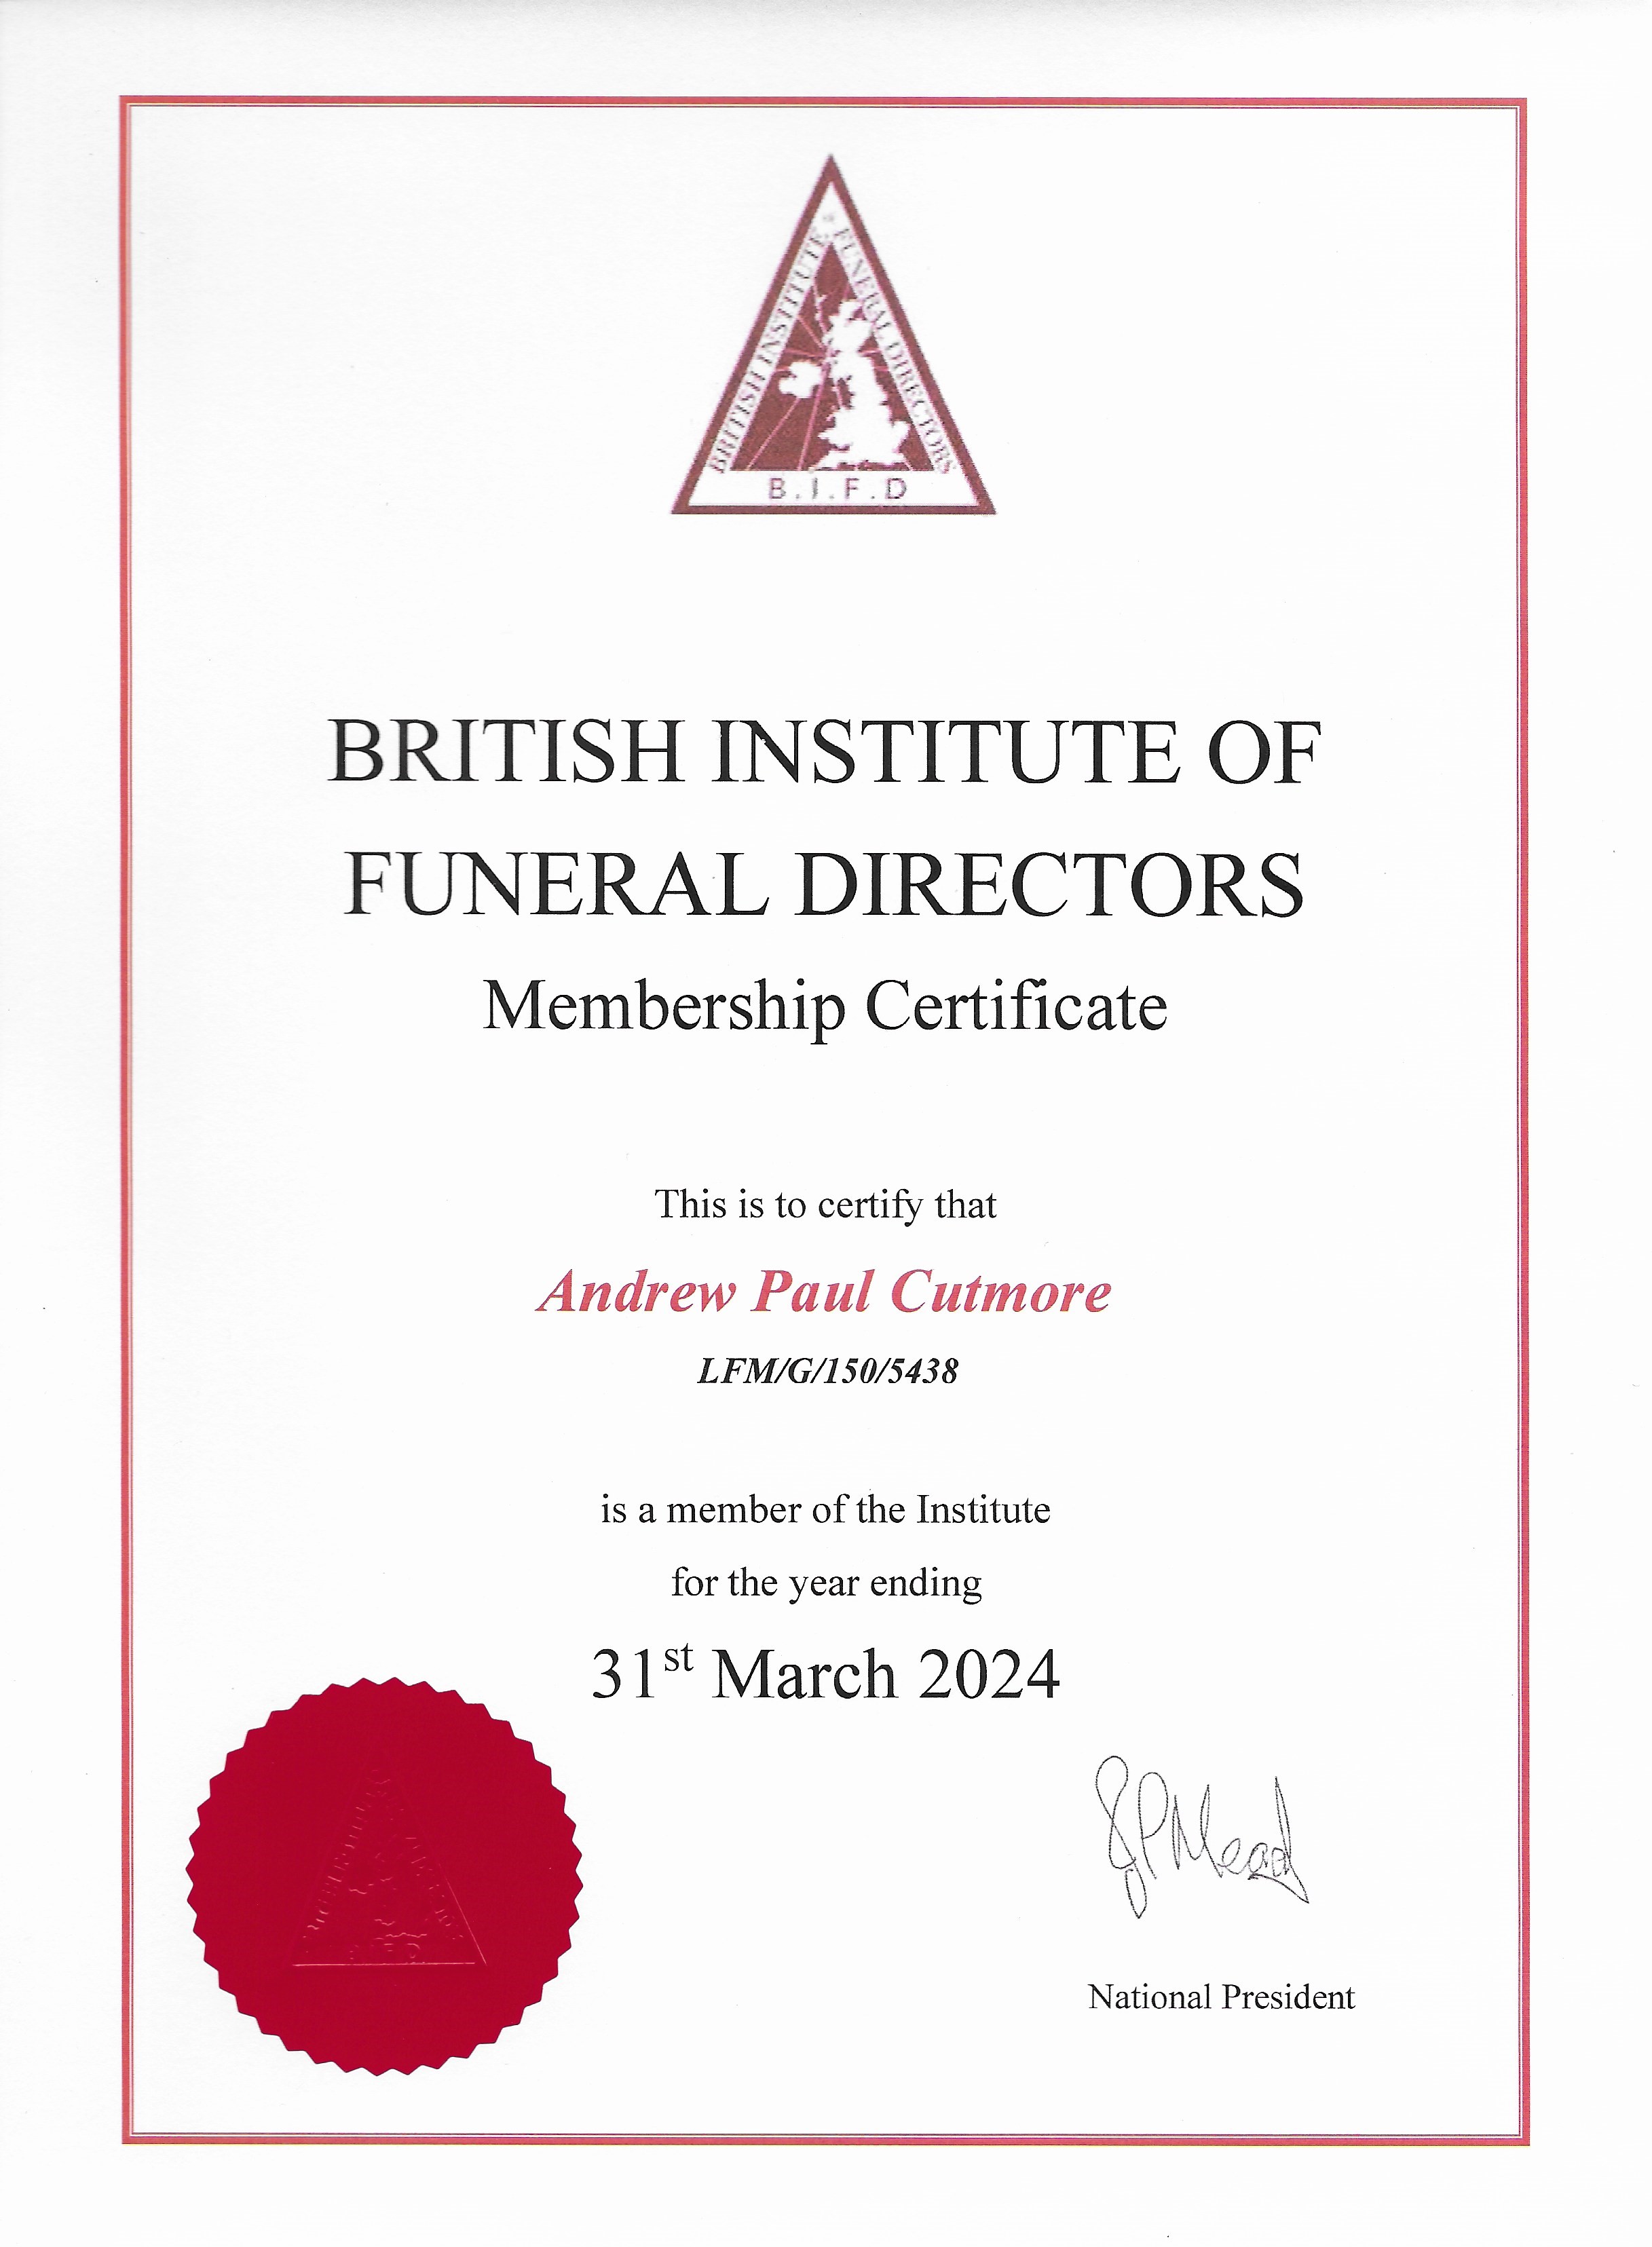 Andrews Membership Certificate for the British Institute of Funeral Directors